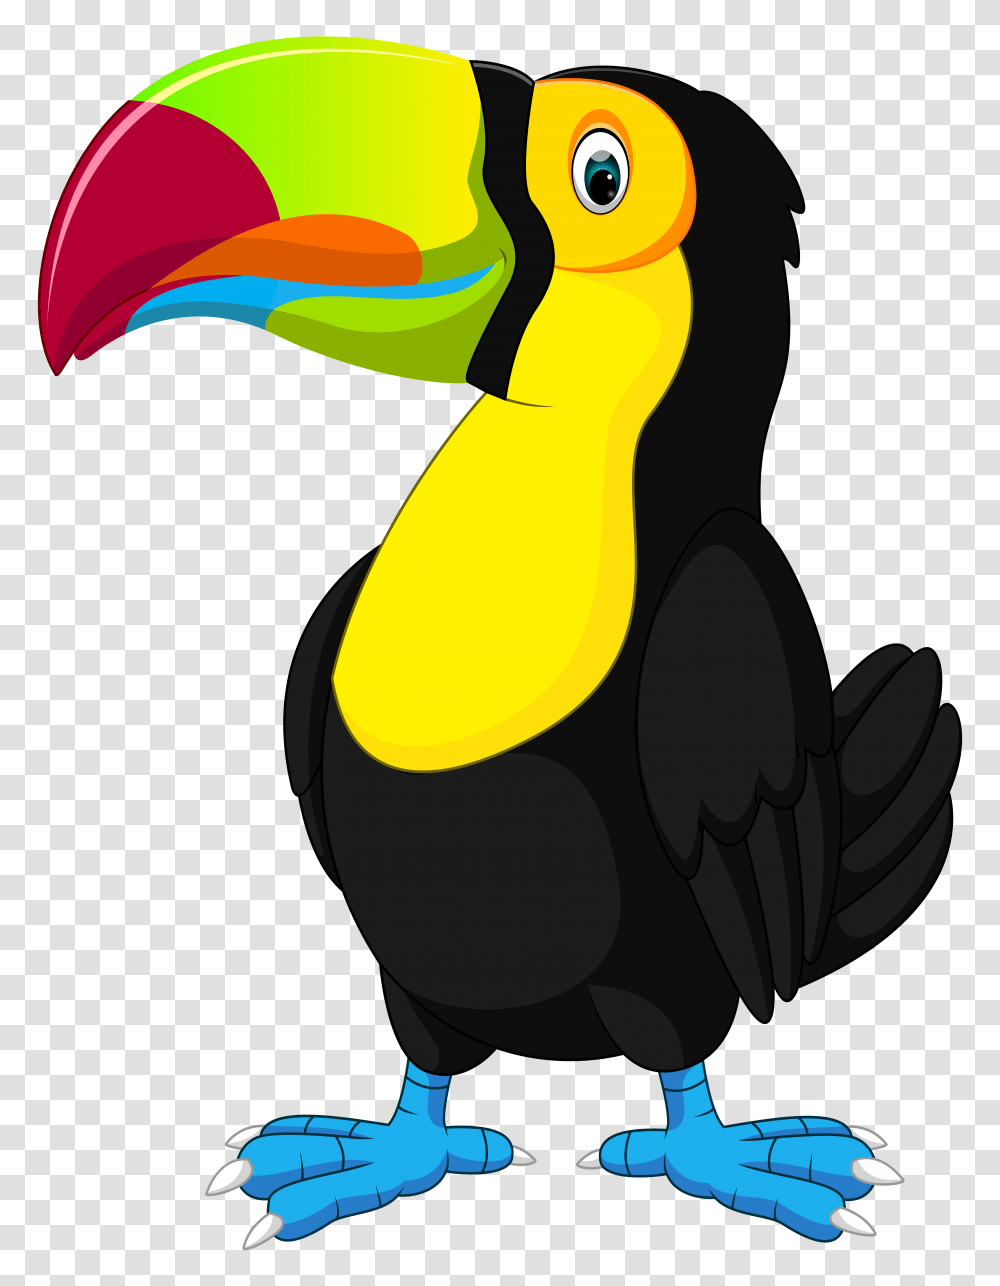 Toucan Cartoon Clip Art, Bird, Animal, Vulture Transparent Png